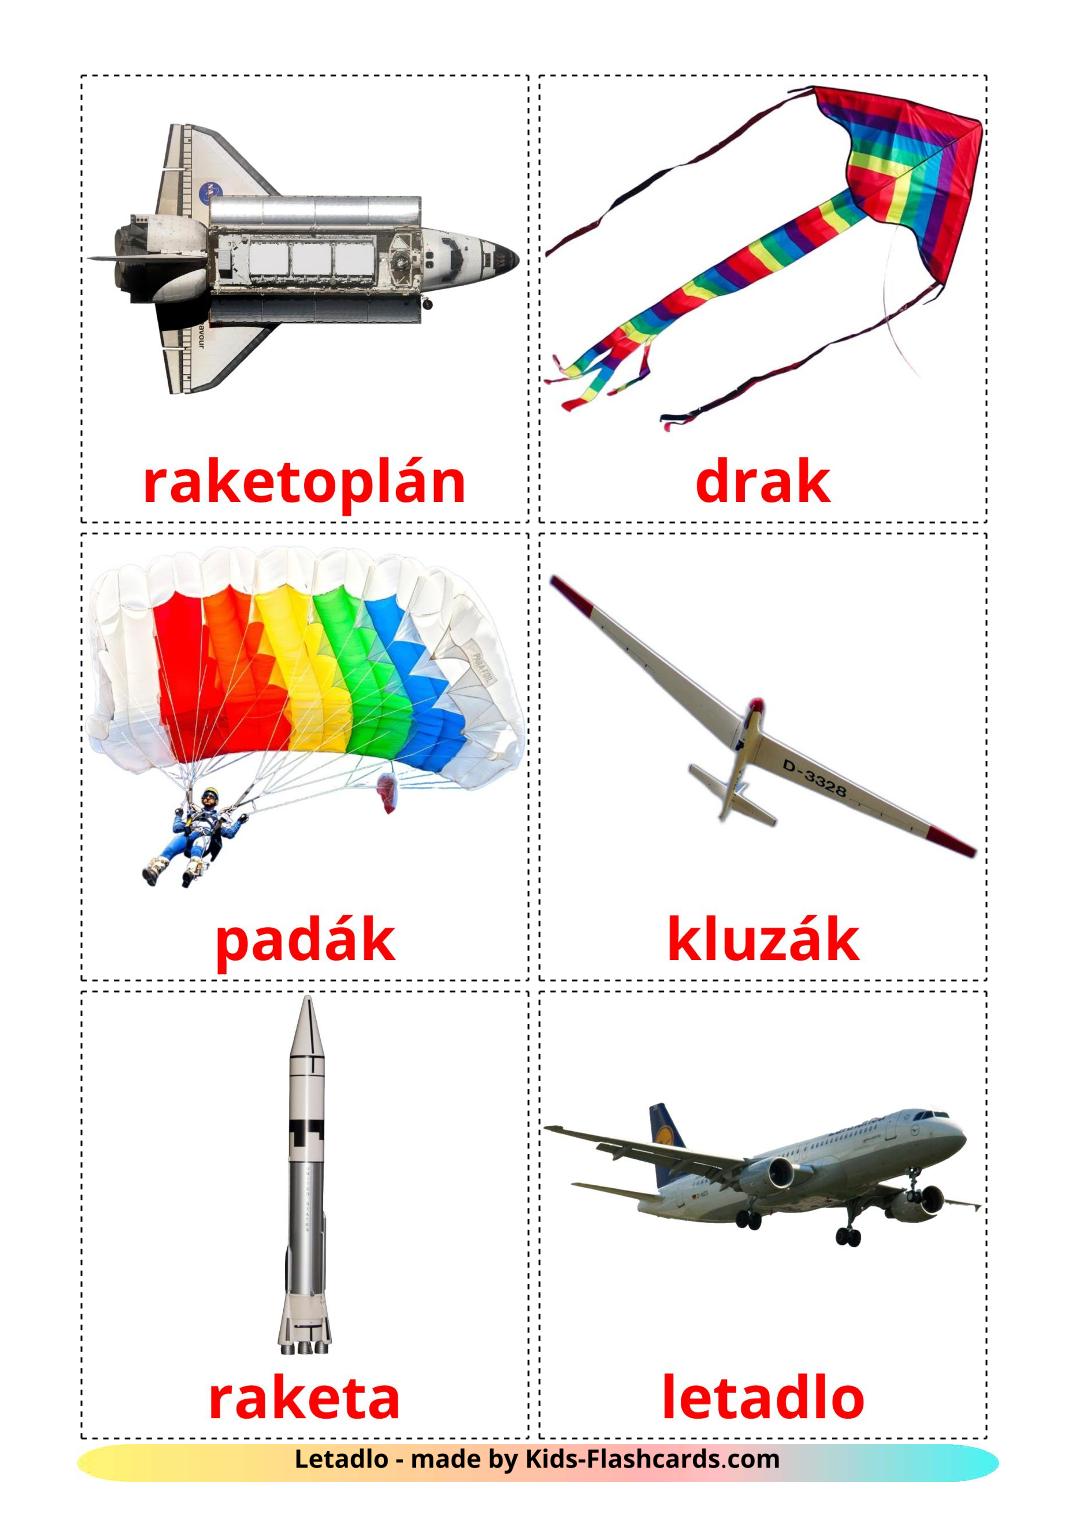 Lucht - 14 gratis printbare tsjechische kaarten